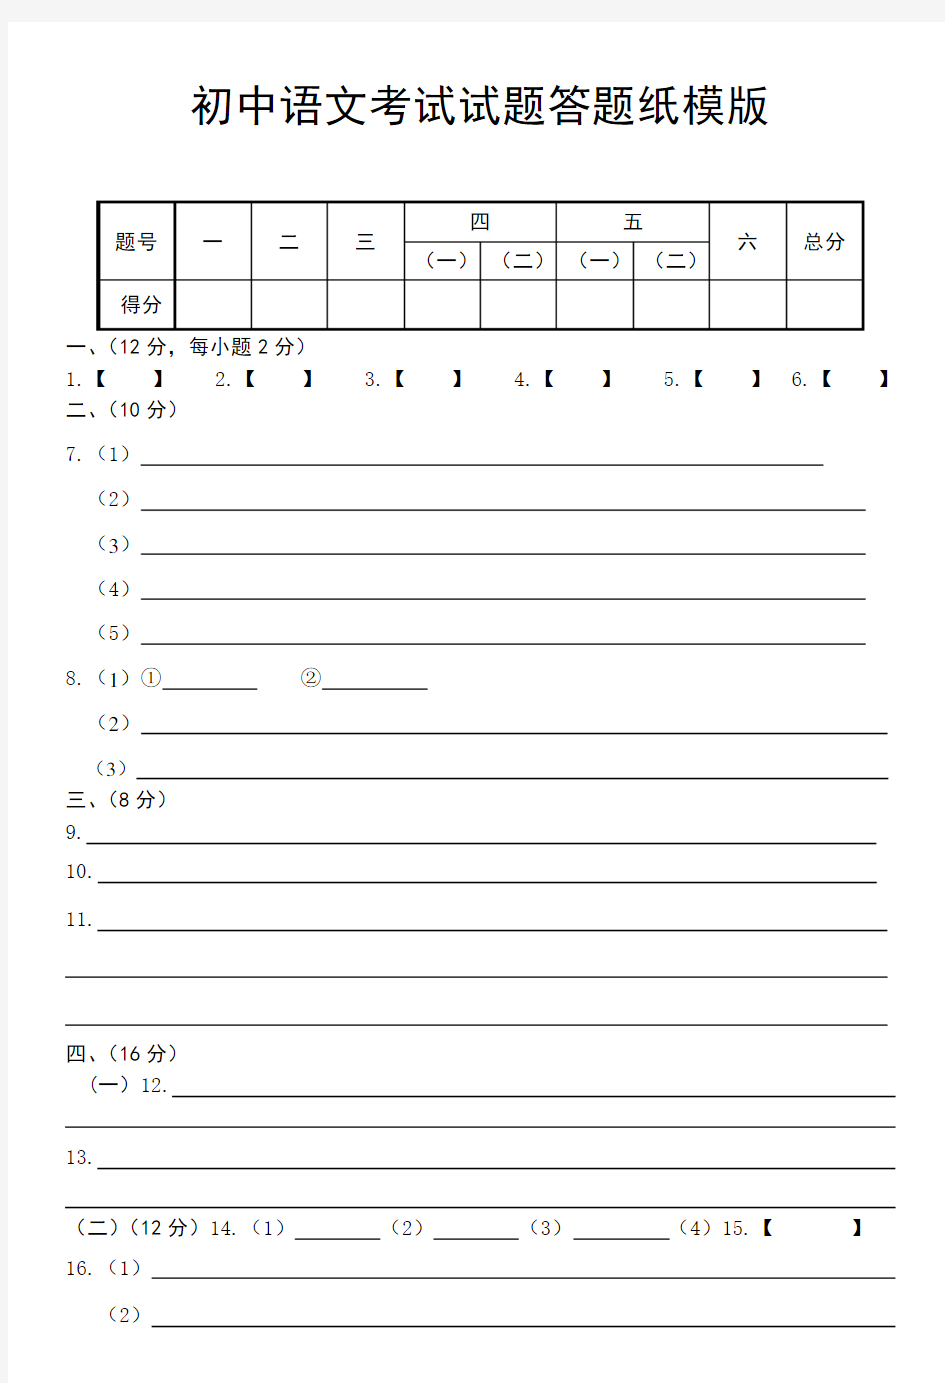 初中语文考试试题答题纸模版